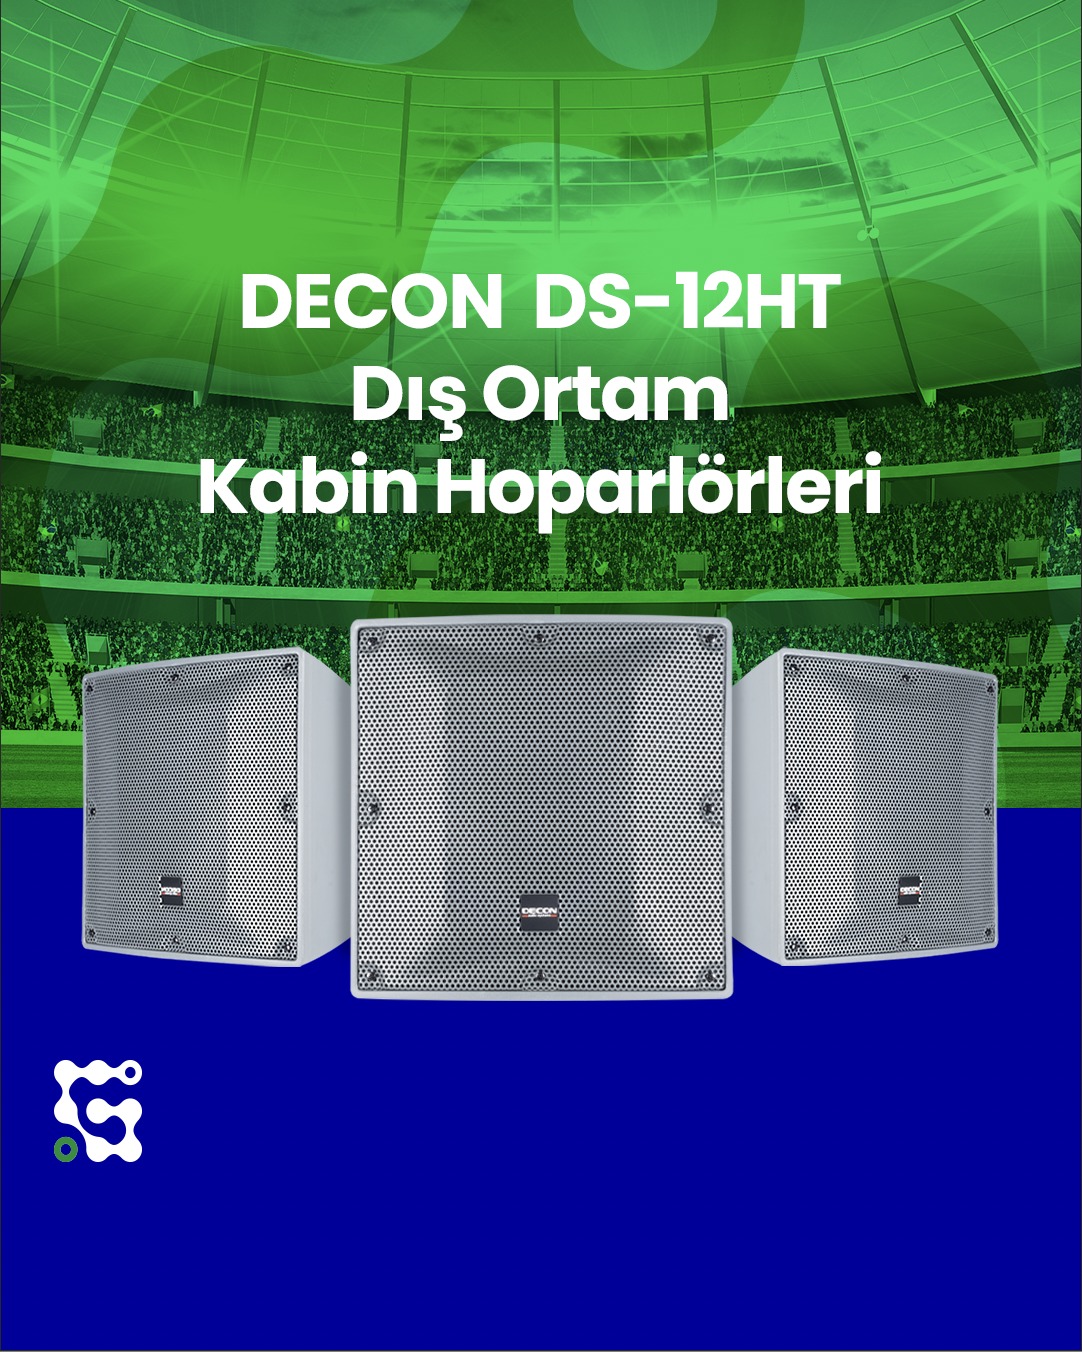 Decon DS-12HT dış ortam kabin hoparlörleri.jpg (390 KB)